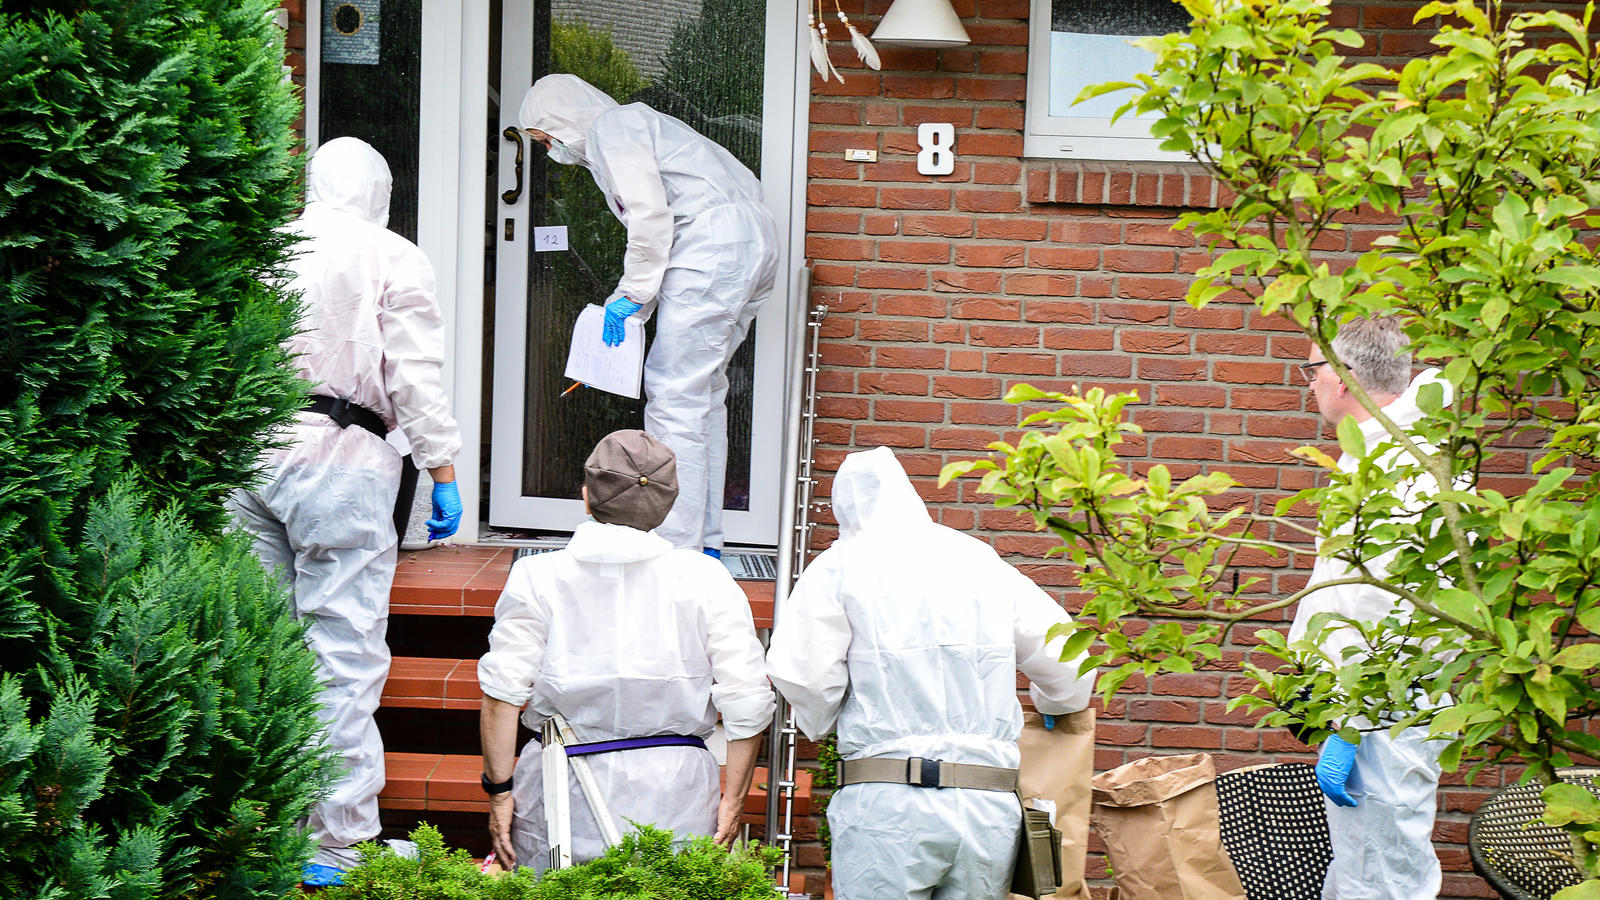 Nach einer Bluttat in Detmold (Nordrhein-Westfalen) sichern Experten der Polizei Spuren am Tatort. Dort war die Leiche einer 30 Jahre alten Frau in ihrer Wohnung gefunden worden, der schwer verletzte Ehemann lag daneben. Die Ermittler stehen nach eig